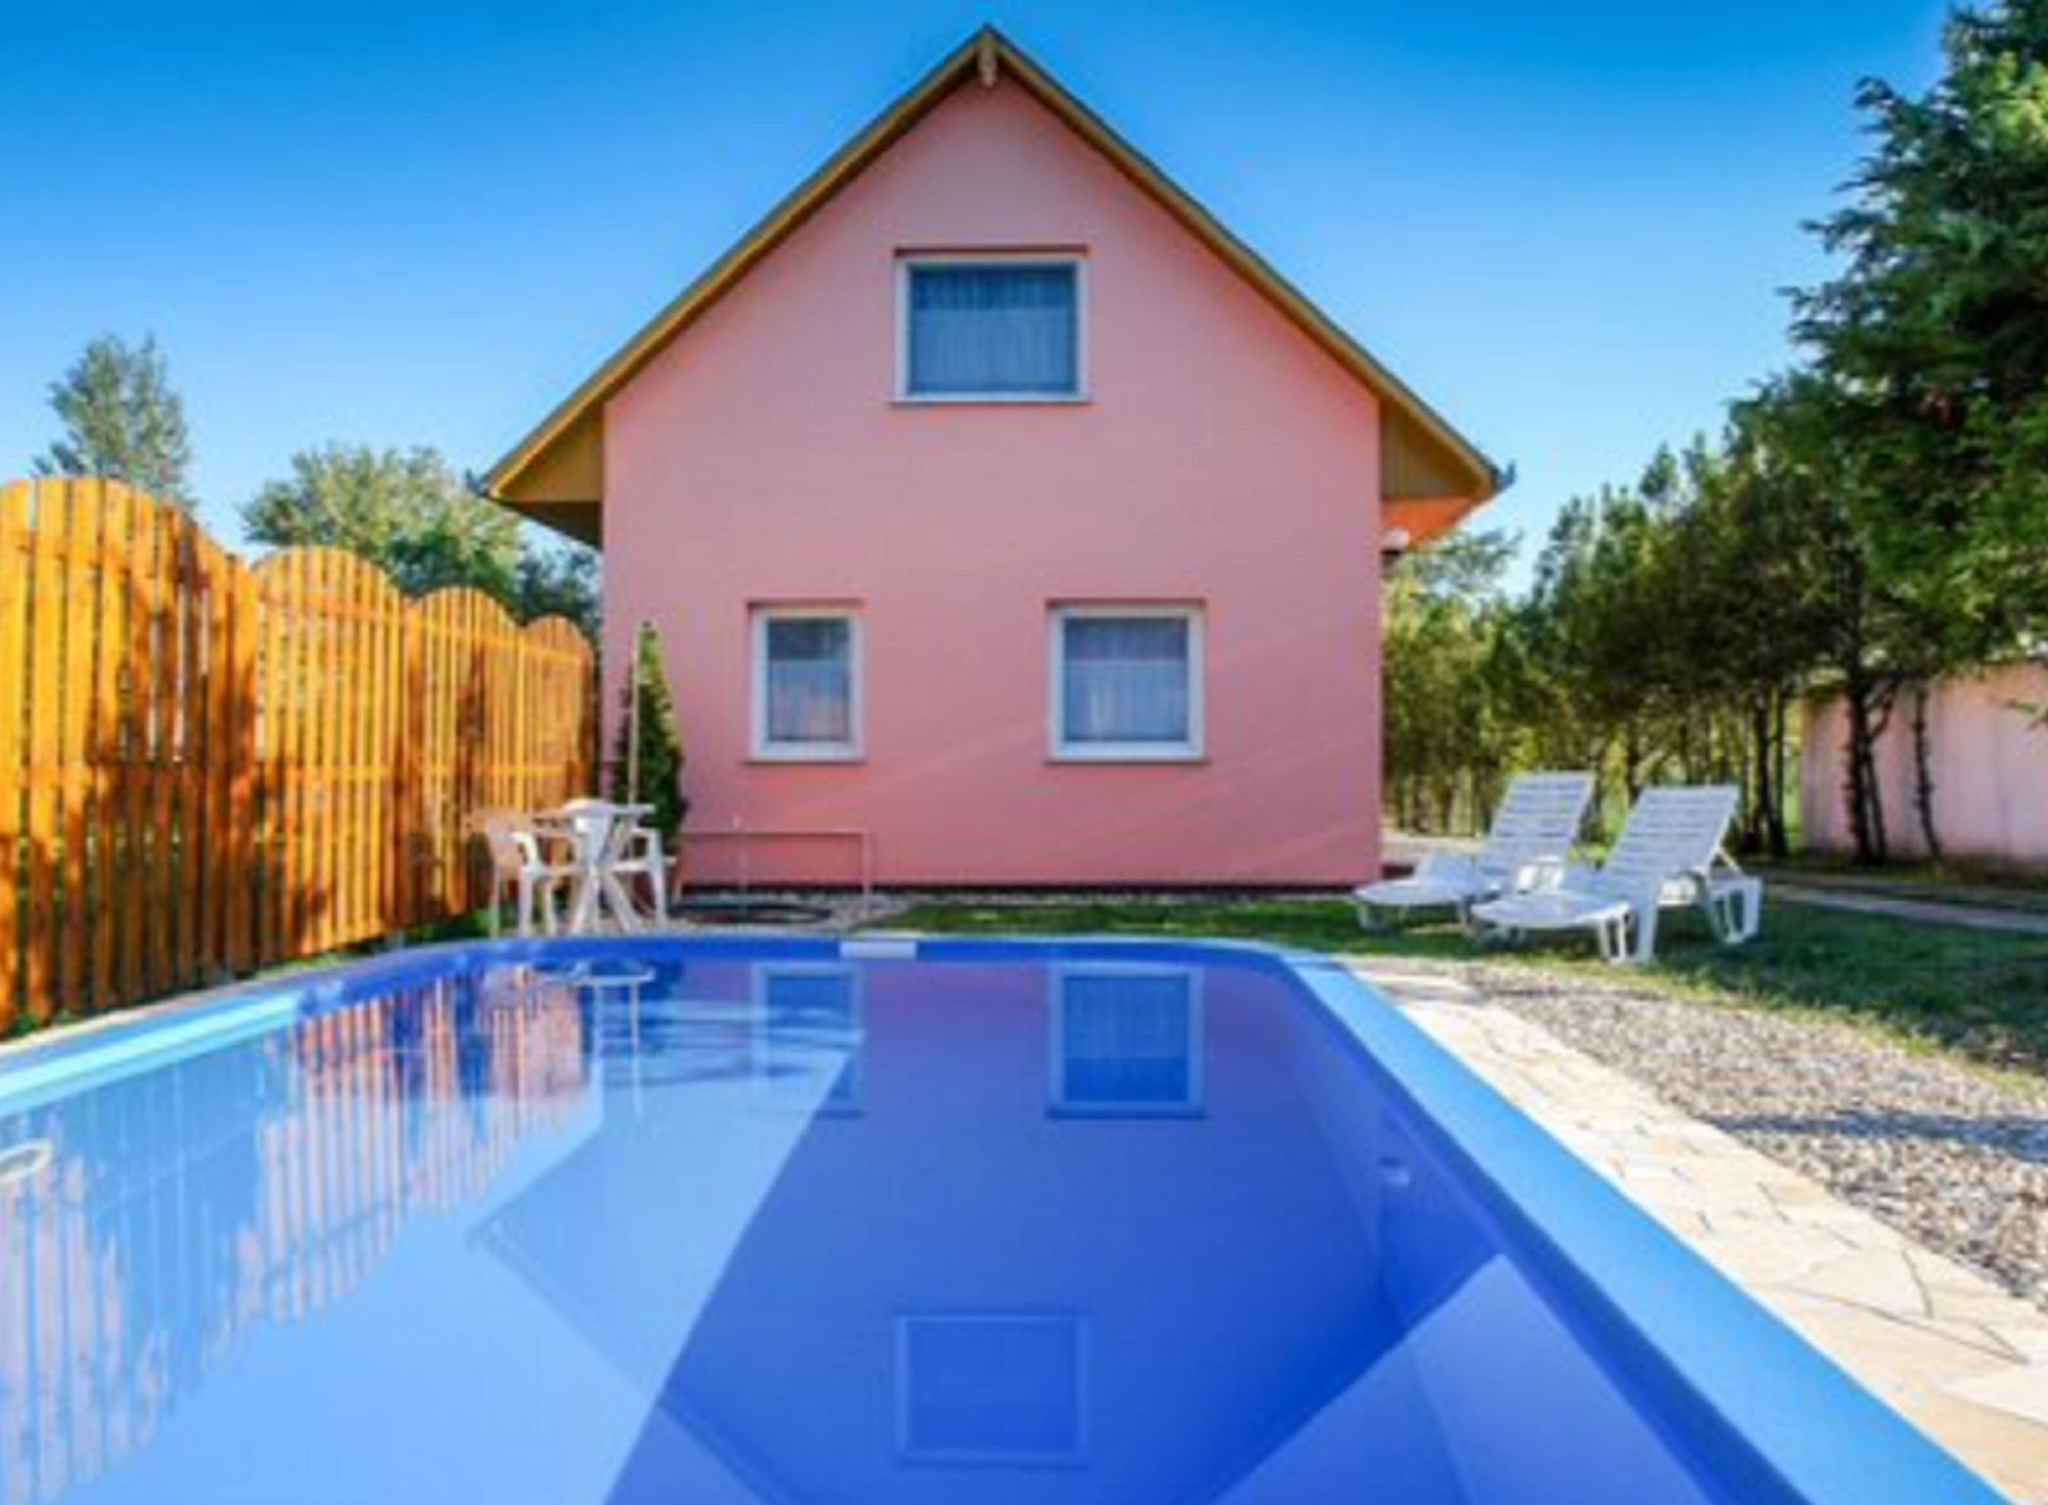 Ferienhaus mit Pool und Gartenpavillon  in Ungarn